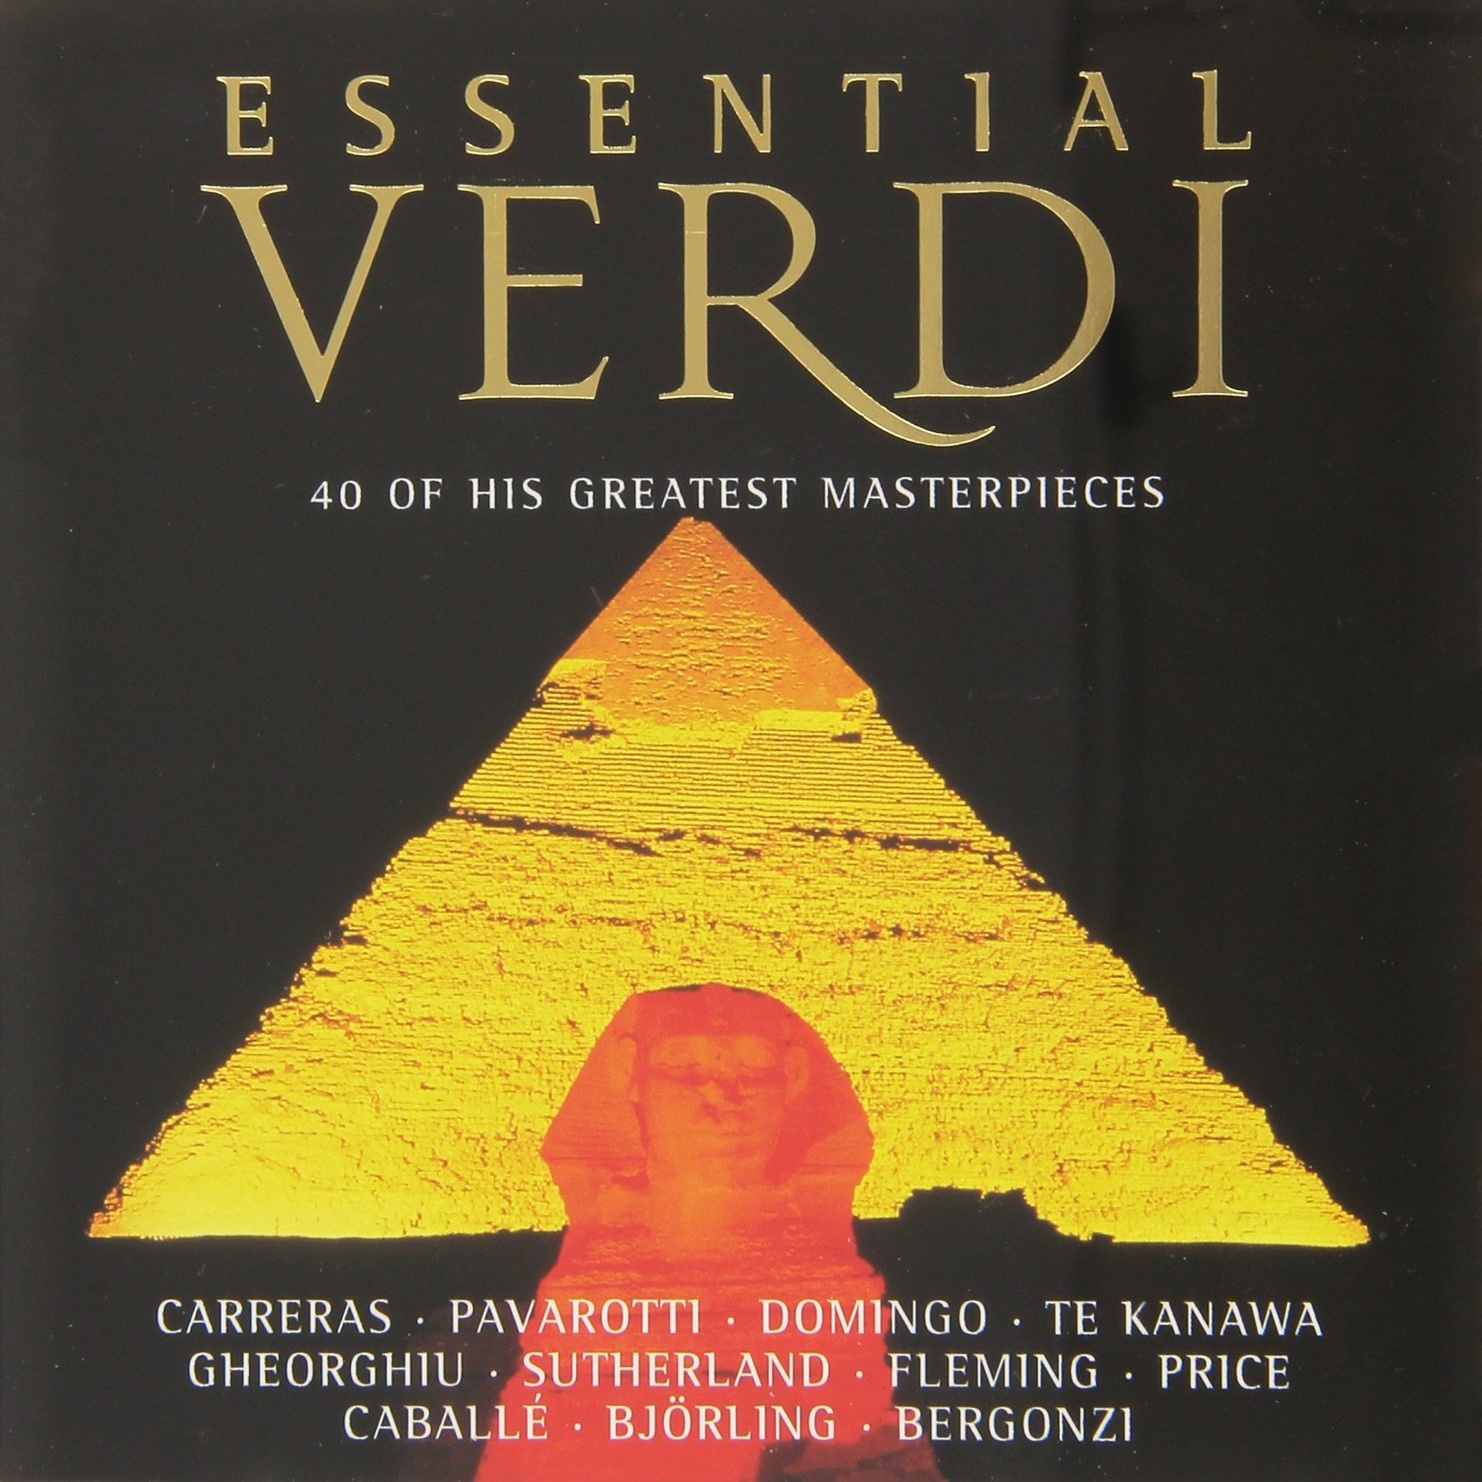 Verdi: Don Carlo - 1886 Modena version / Act 4 - "O Carlo, ascolta"